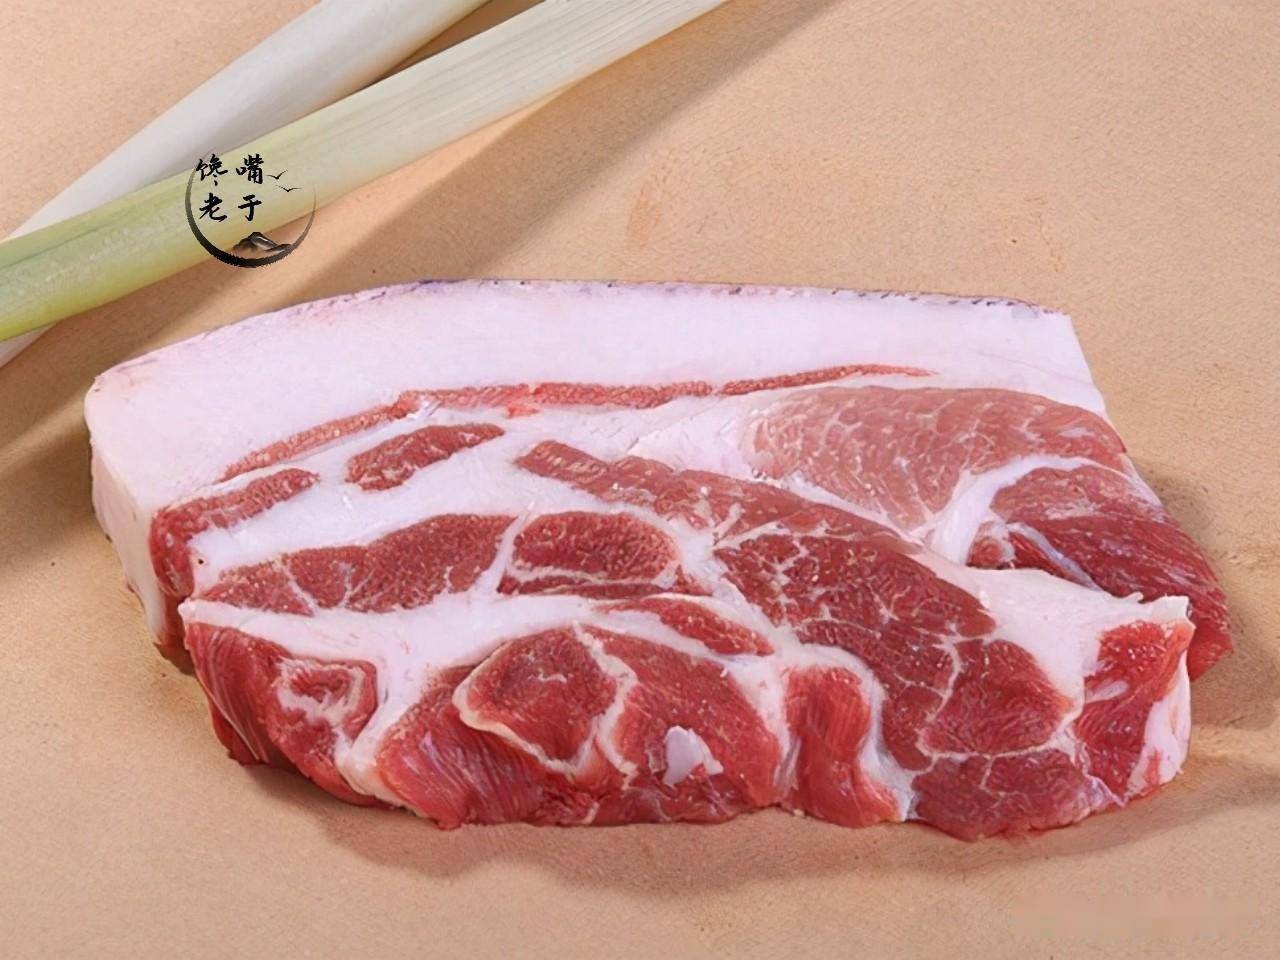 前槽肉就是前腿肉,很多朋友买猪肉的时候,一看这块肉,咋肥肉还有这么